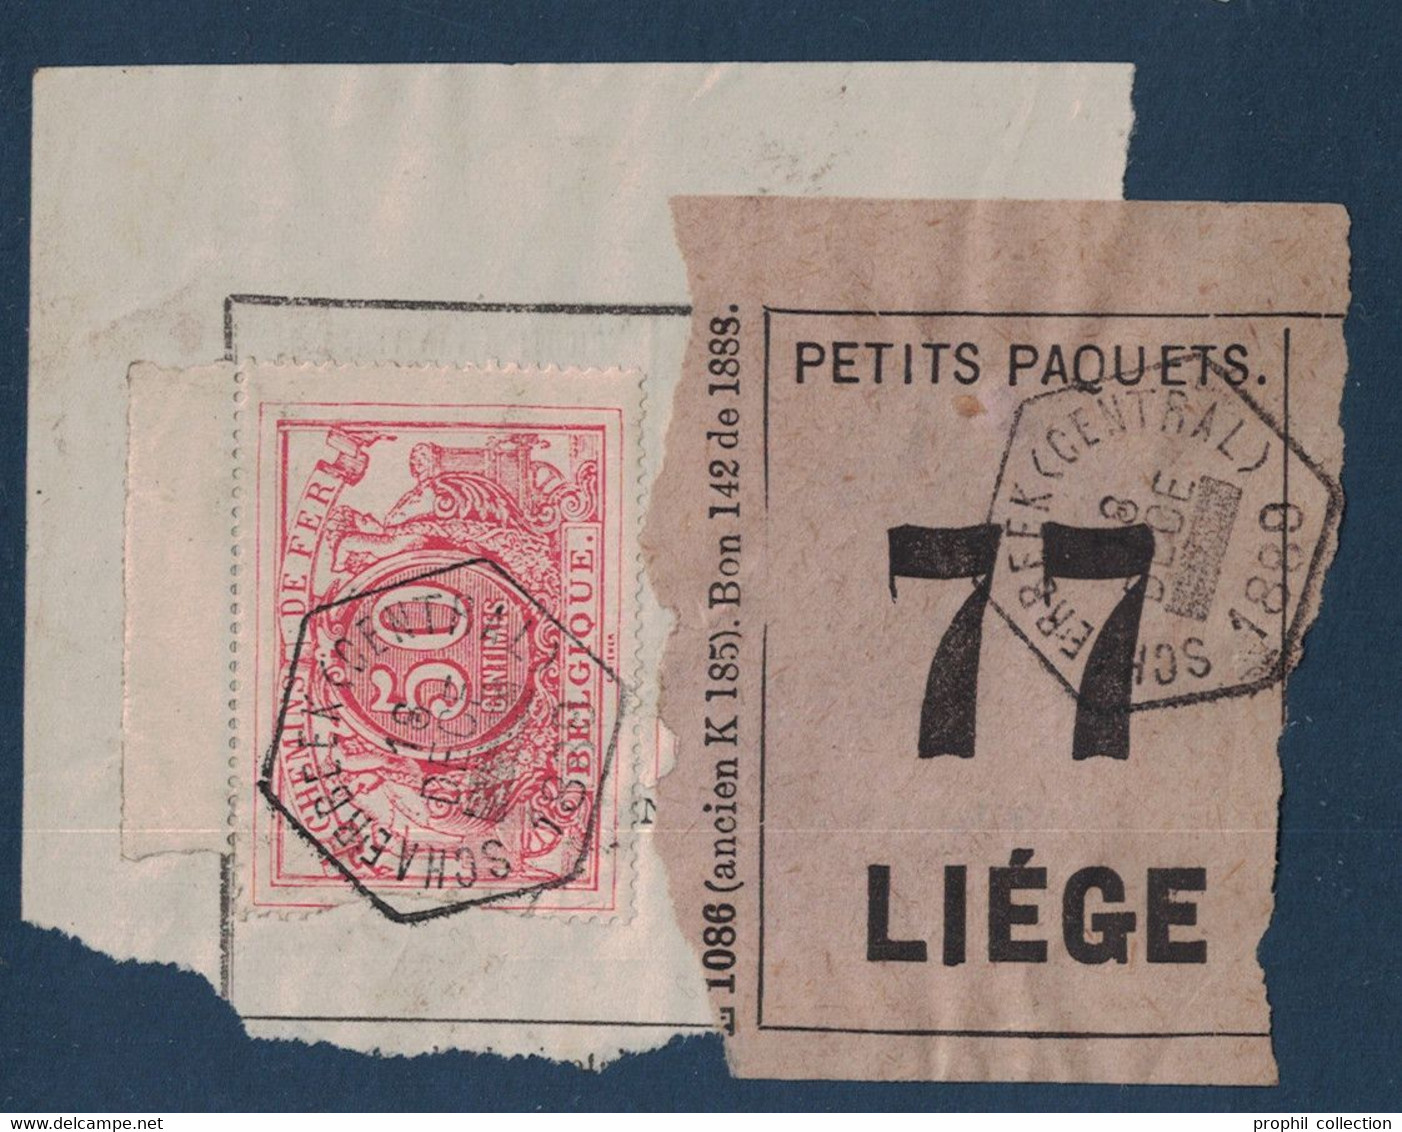 FRAGMENT Avec ETIQUETTE PETITS PAQUETS TIMBRE CHEMINS DE FER CACHET SCHAERBEEK (CENTRAL) > LIEGE 1889 - Documents & Fragments